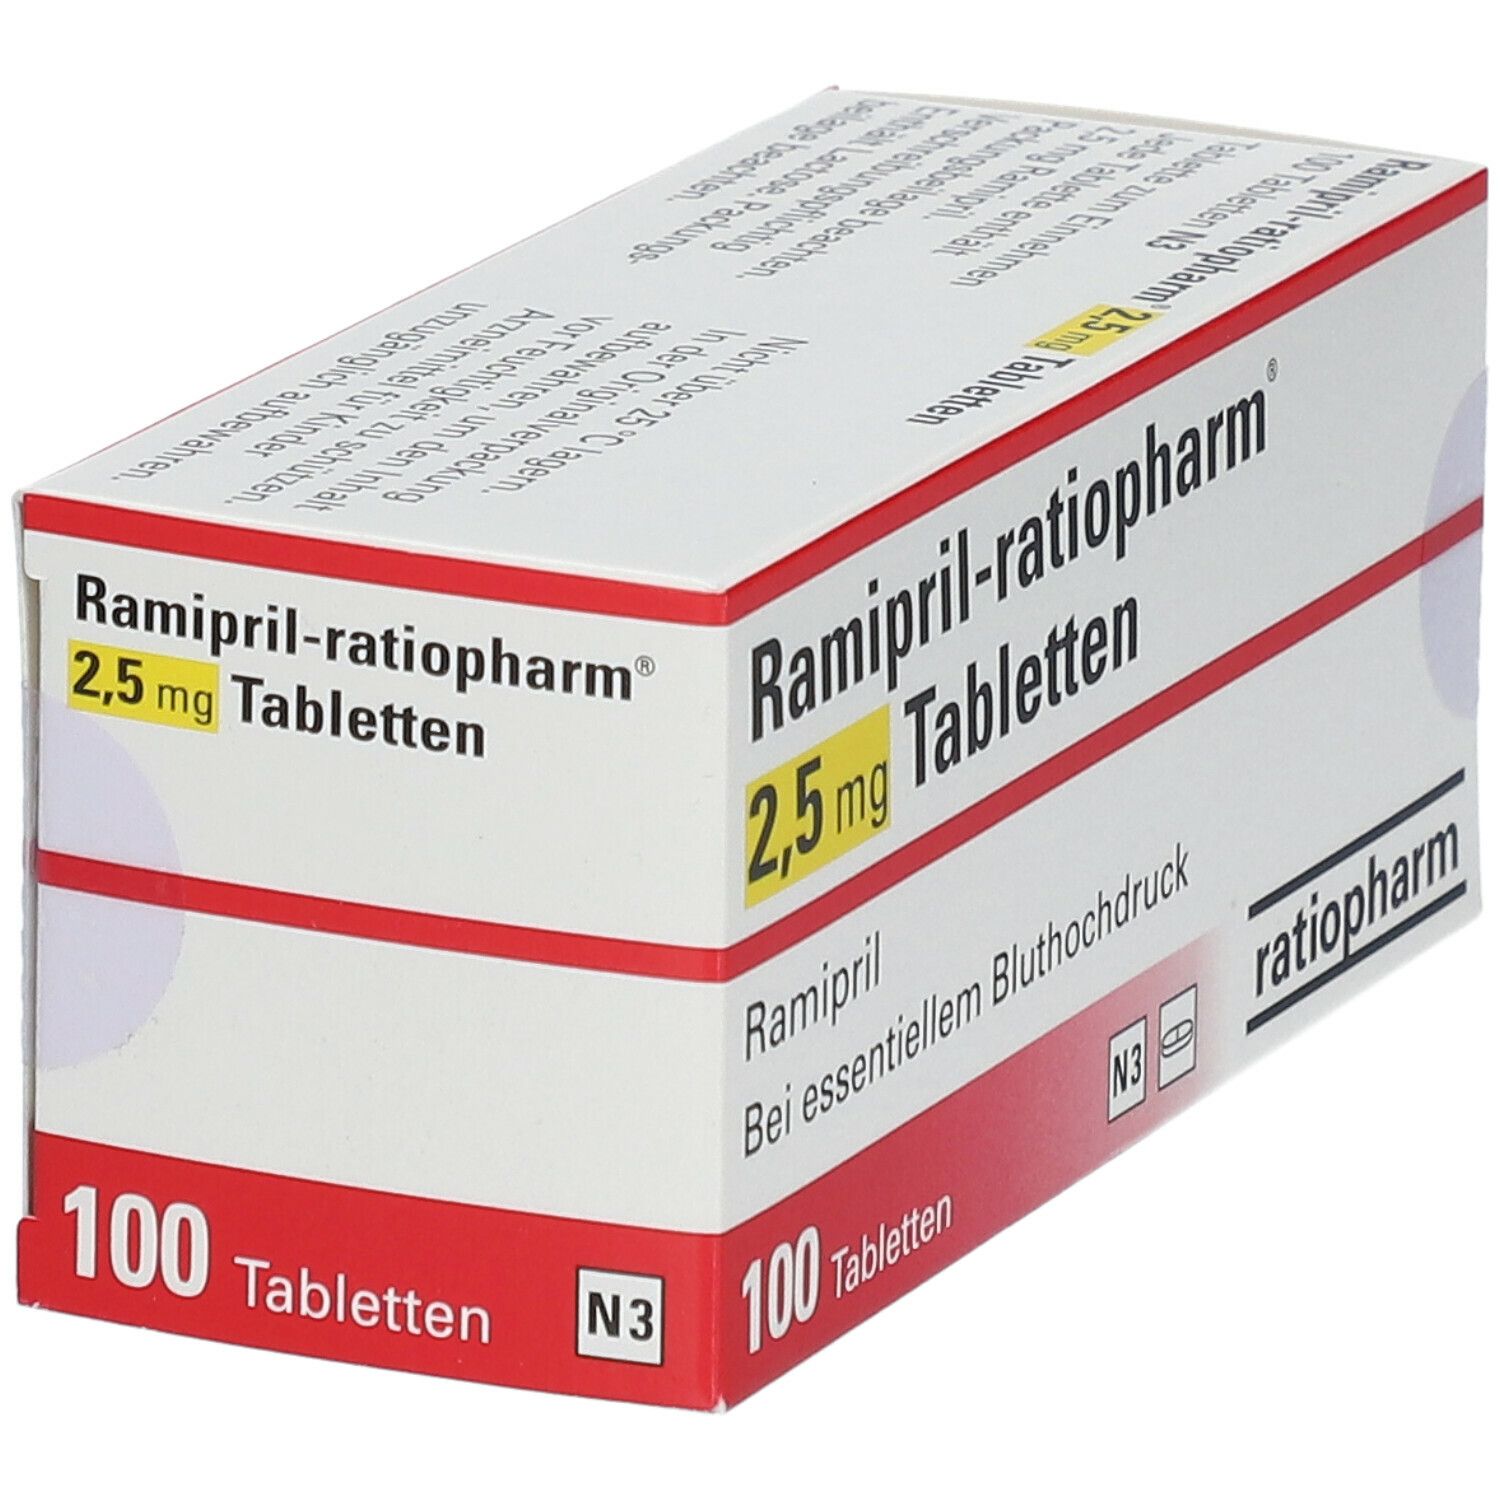 Ramipril-ratiopharm® 2,5 mg